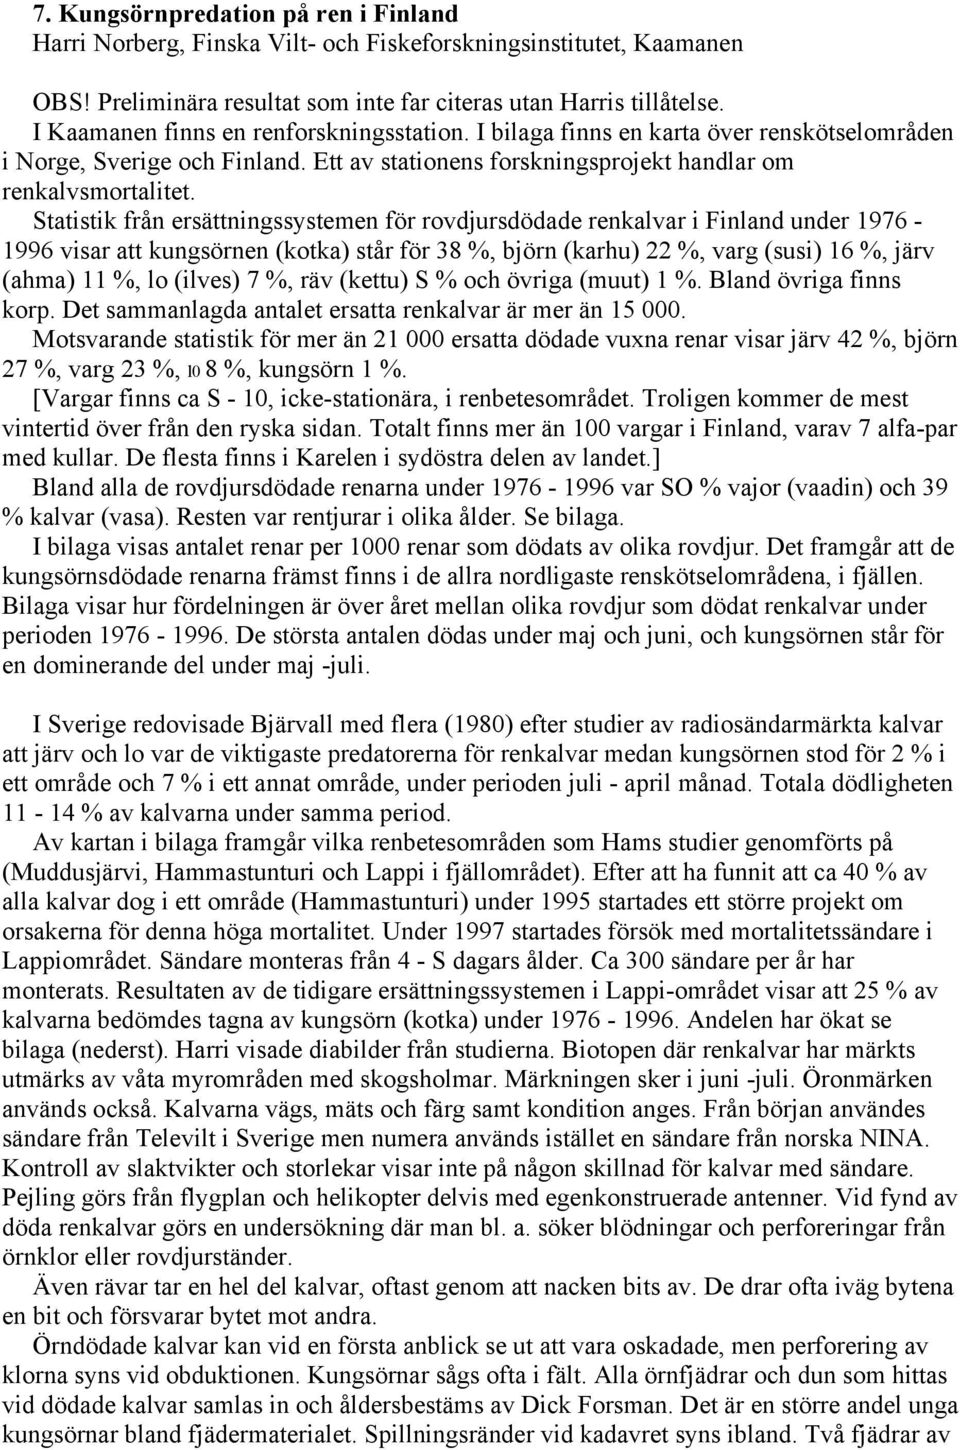 Statistik från ersättningssystemen för rovdjursdödade renkalvar i Finland under 1976-1996 visar att kungsörnen (kotka) står för 38 %, björn (karhu) 22 %, varg (susi) 16 %, järv (ahma) 11 %, lo